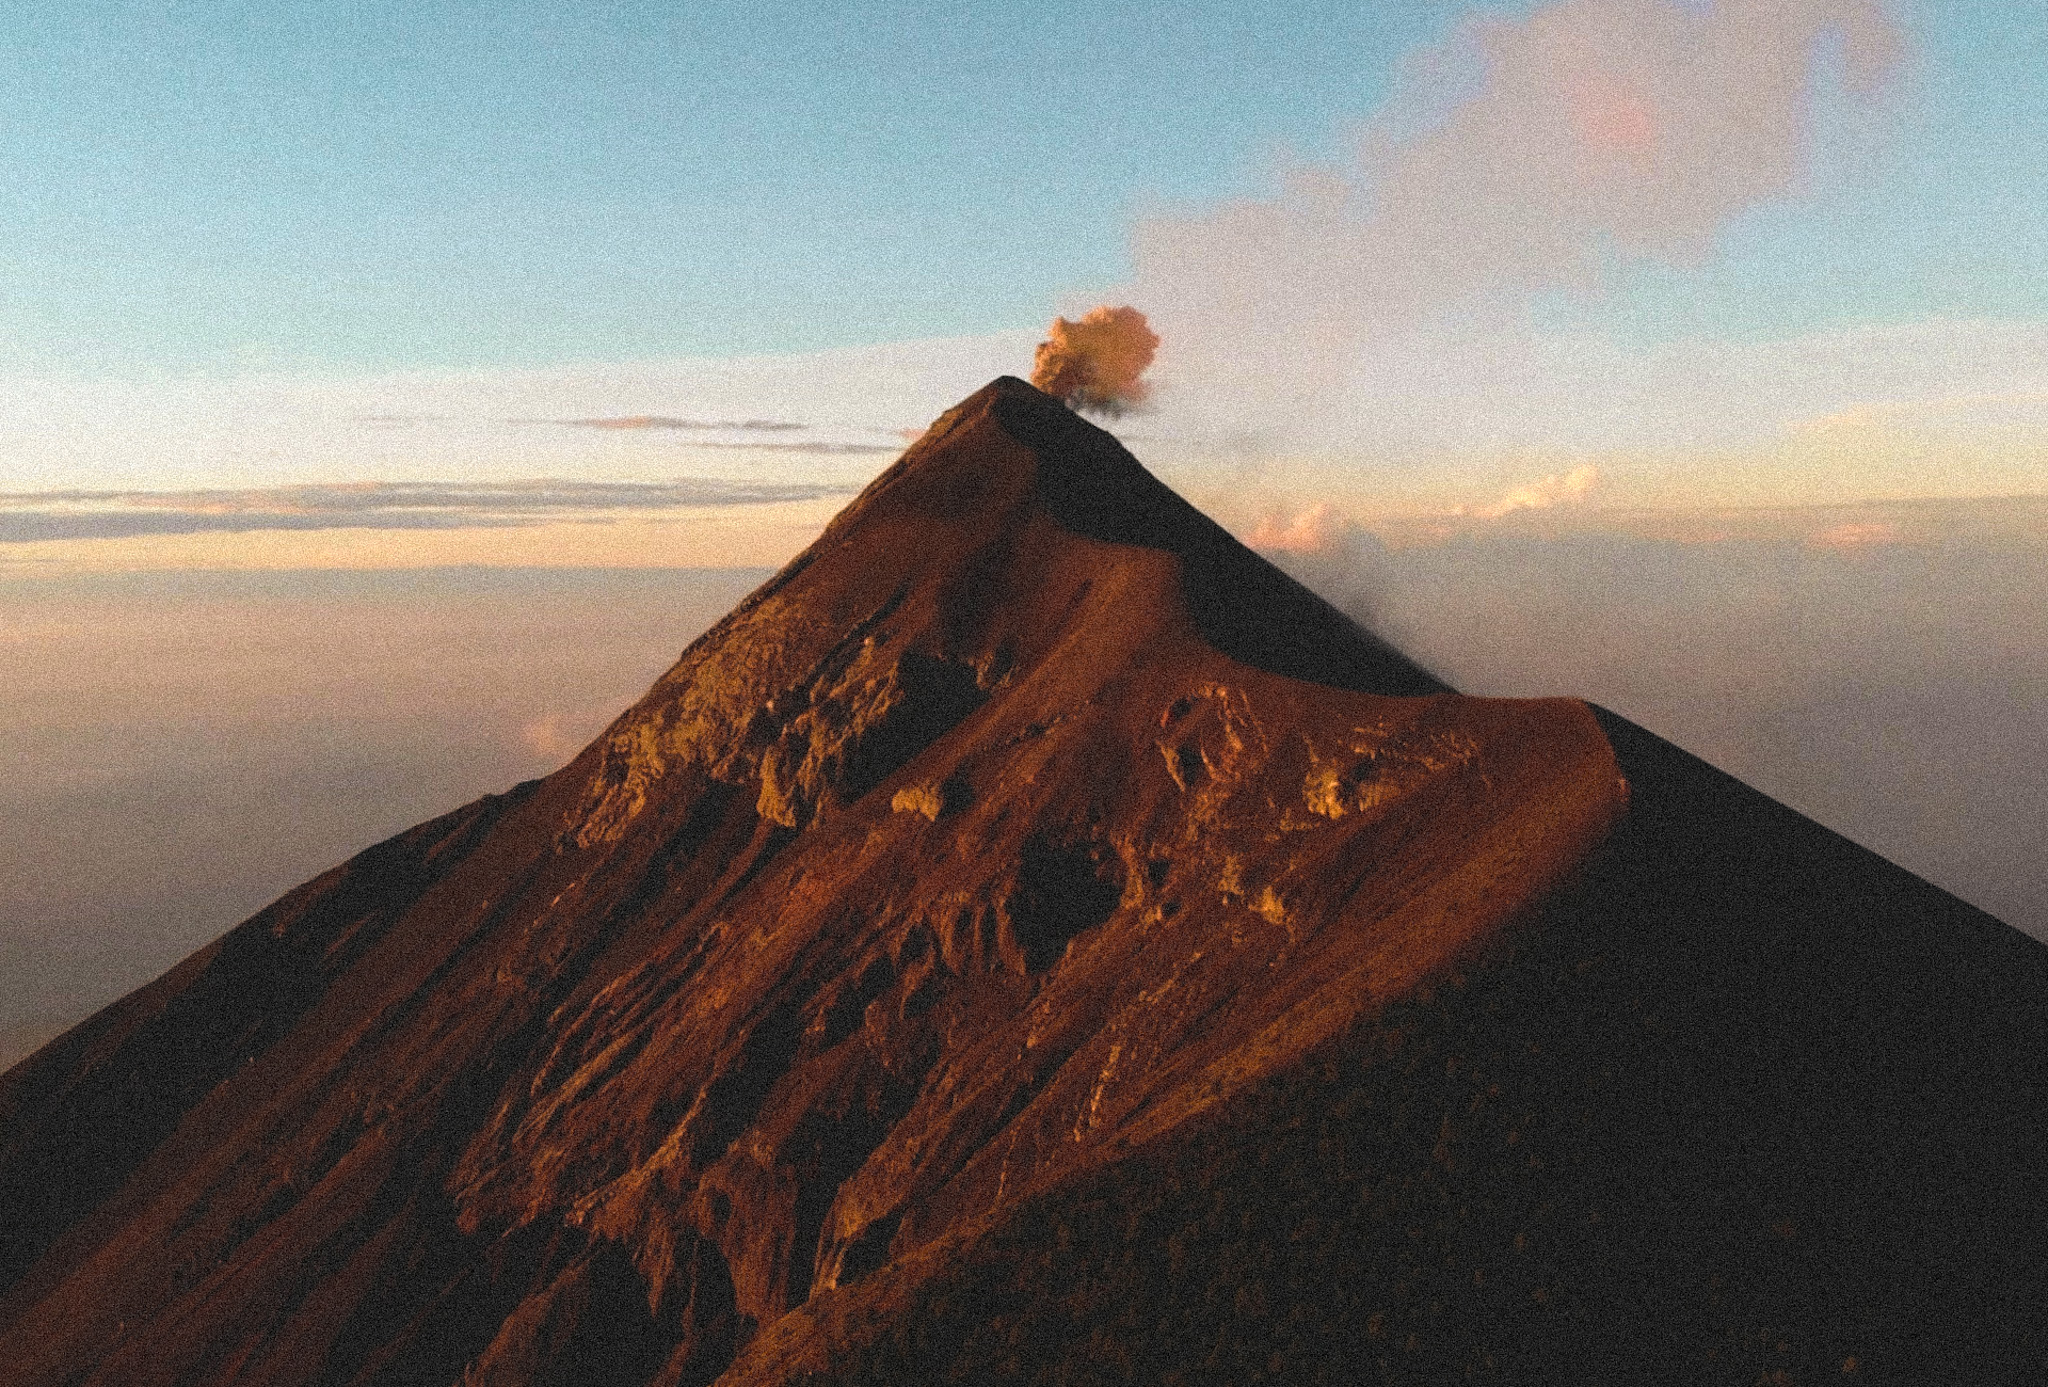 Volcan de fuego Guatemala